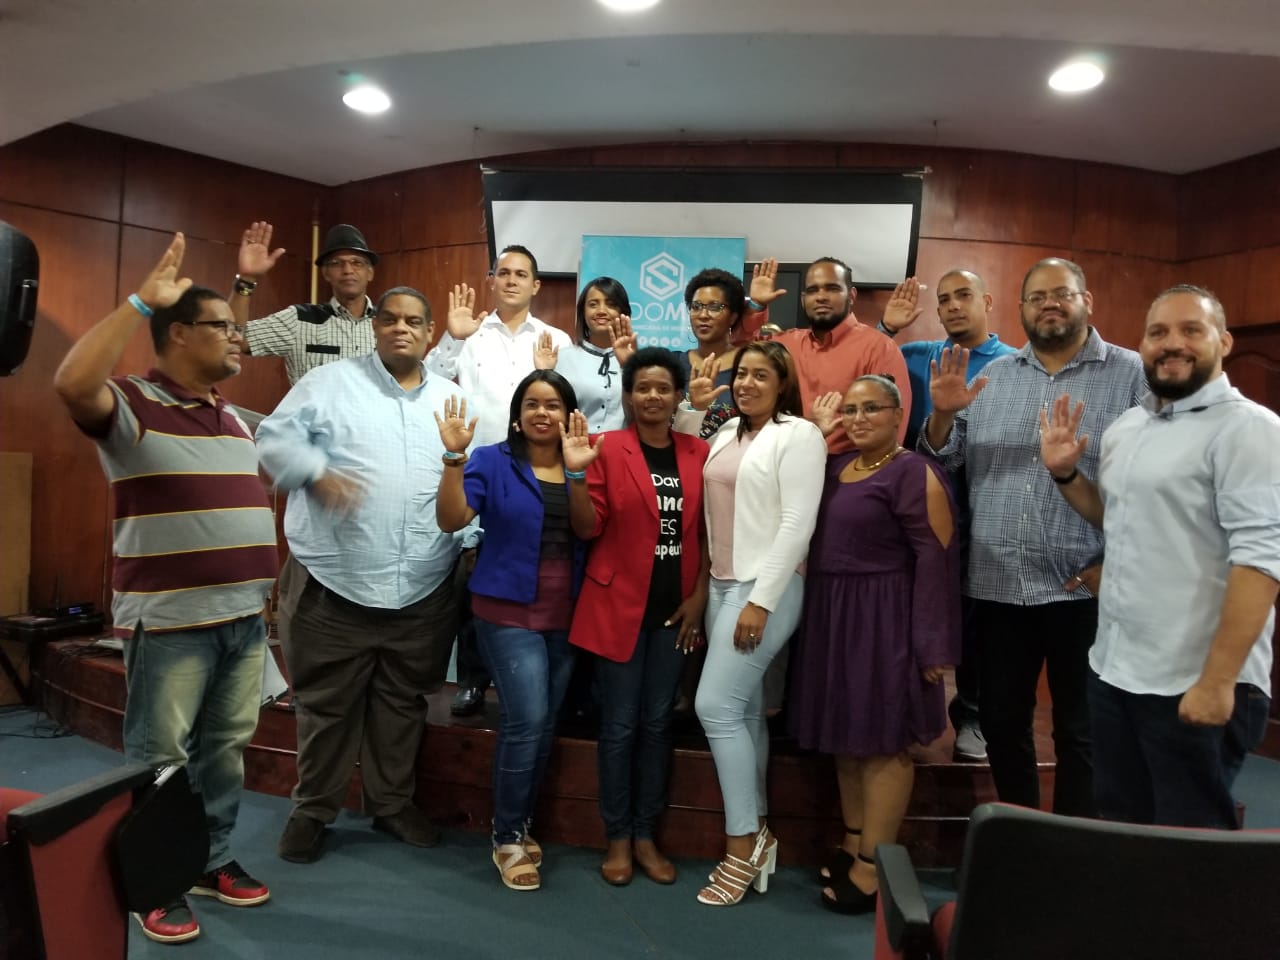 Periódico Digital Portazona anuncia su afiliación a la Sociedad Dominicana de Medios Digitales